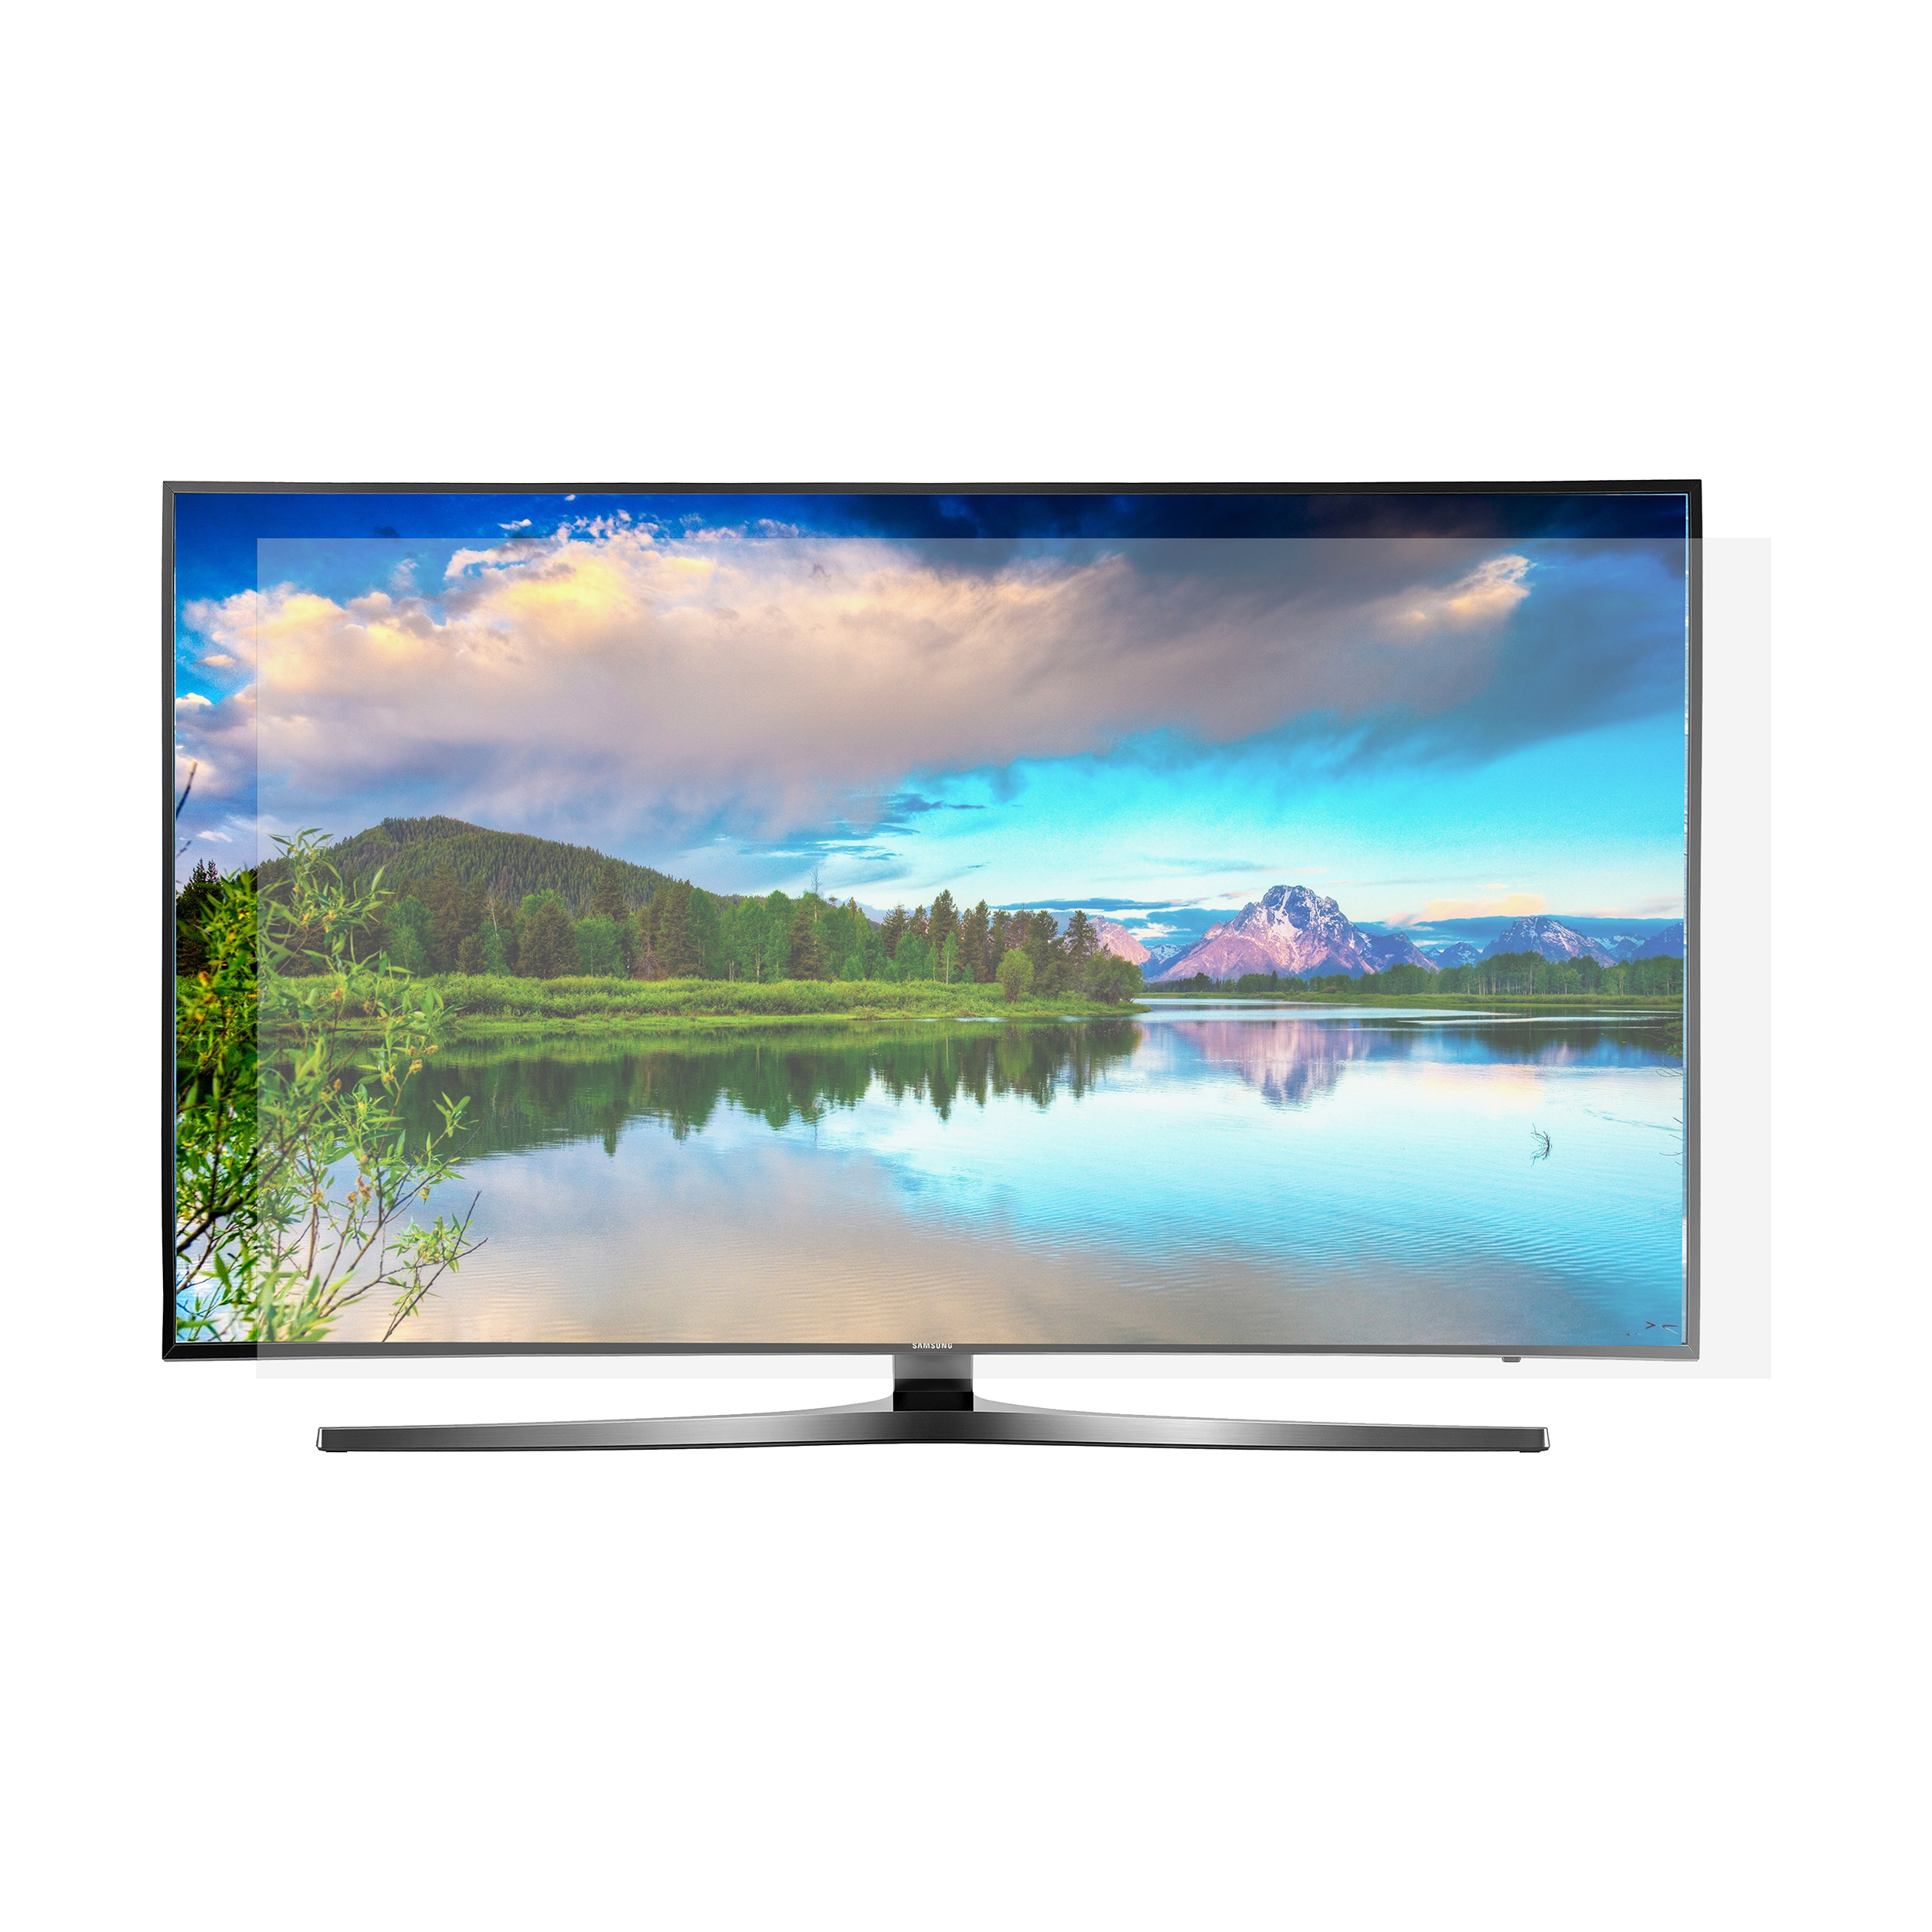 محافظ صفحه نمایش تلویزیون مدل SP-58 مناسب برای تلویزیون های 58 اینچی